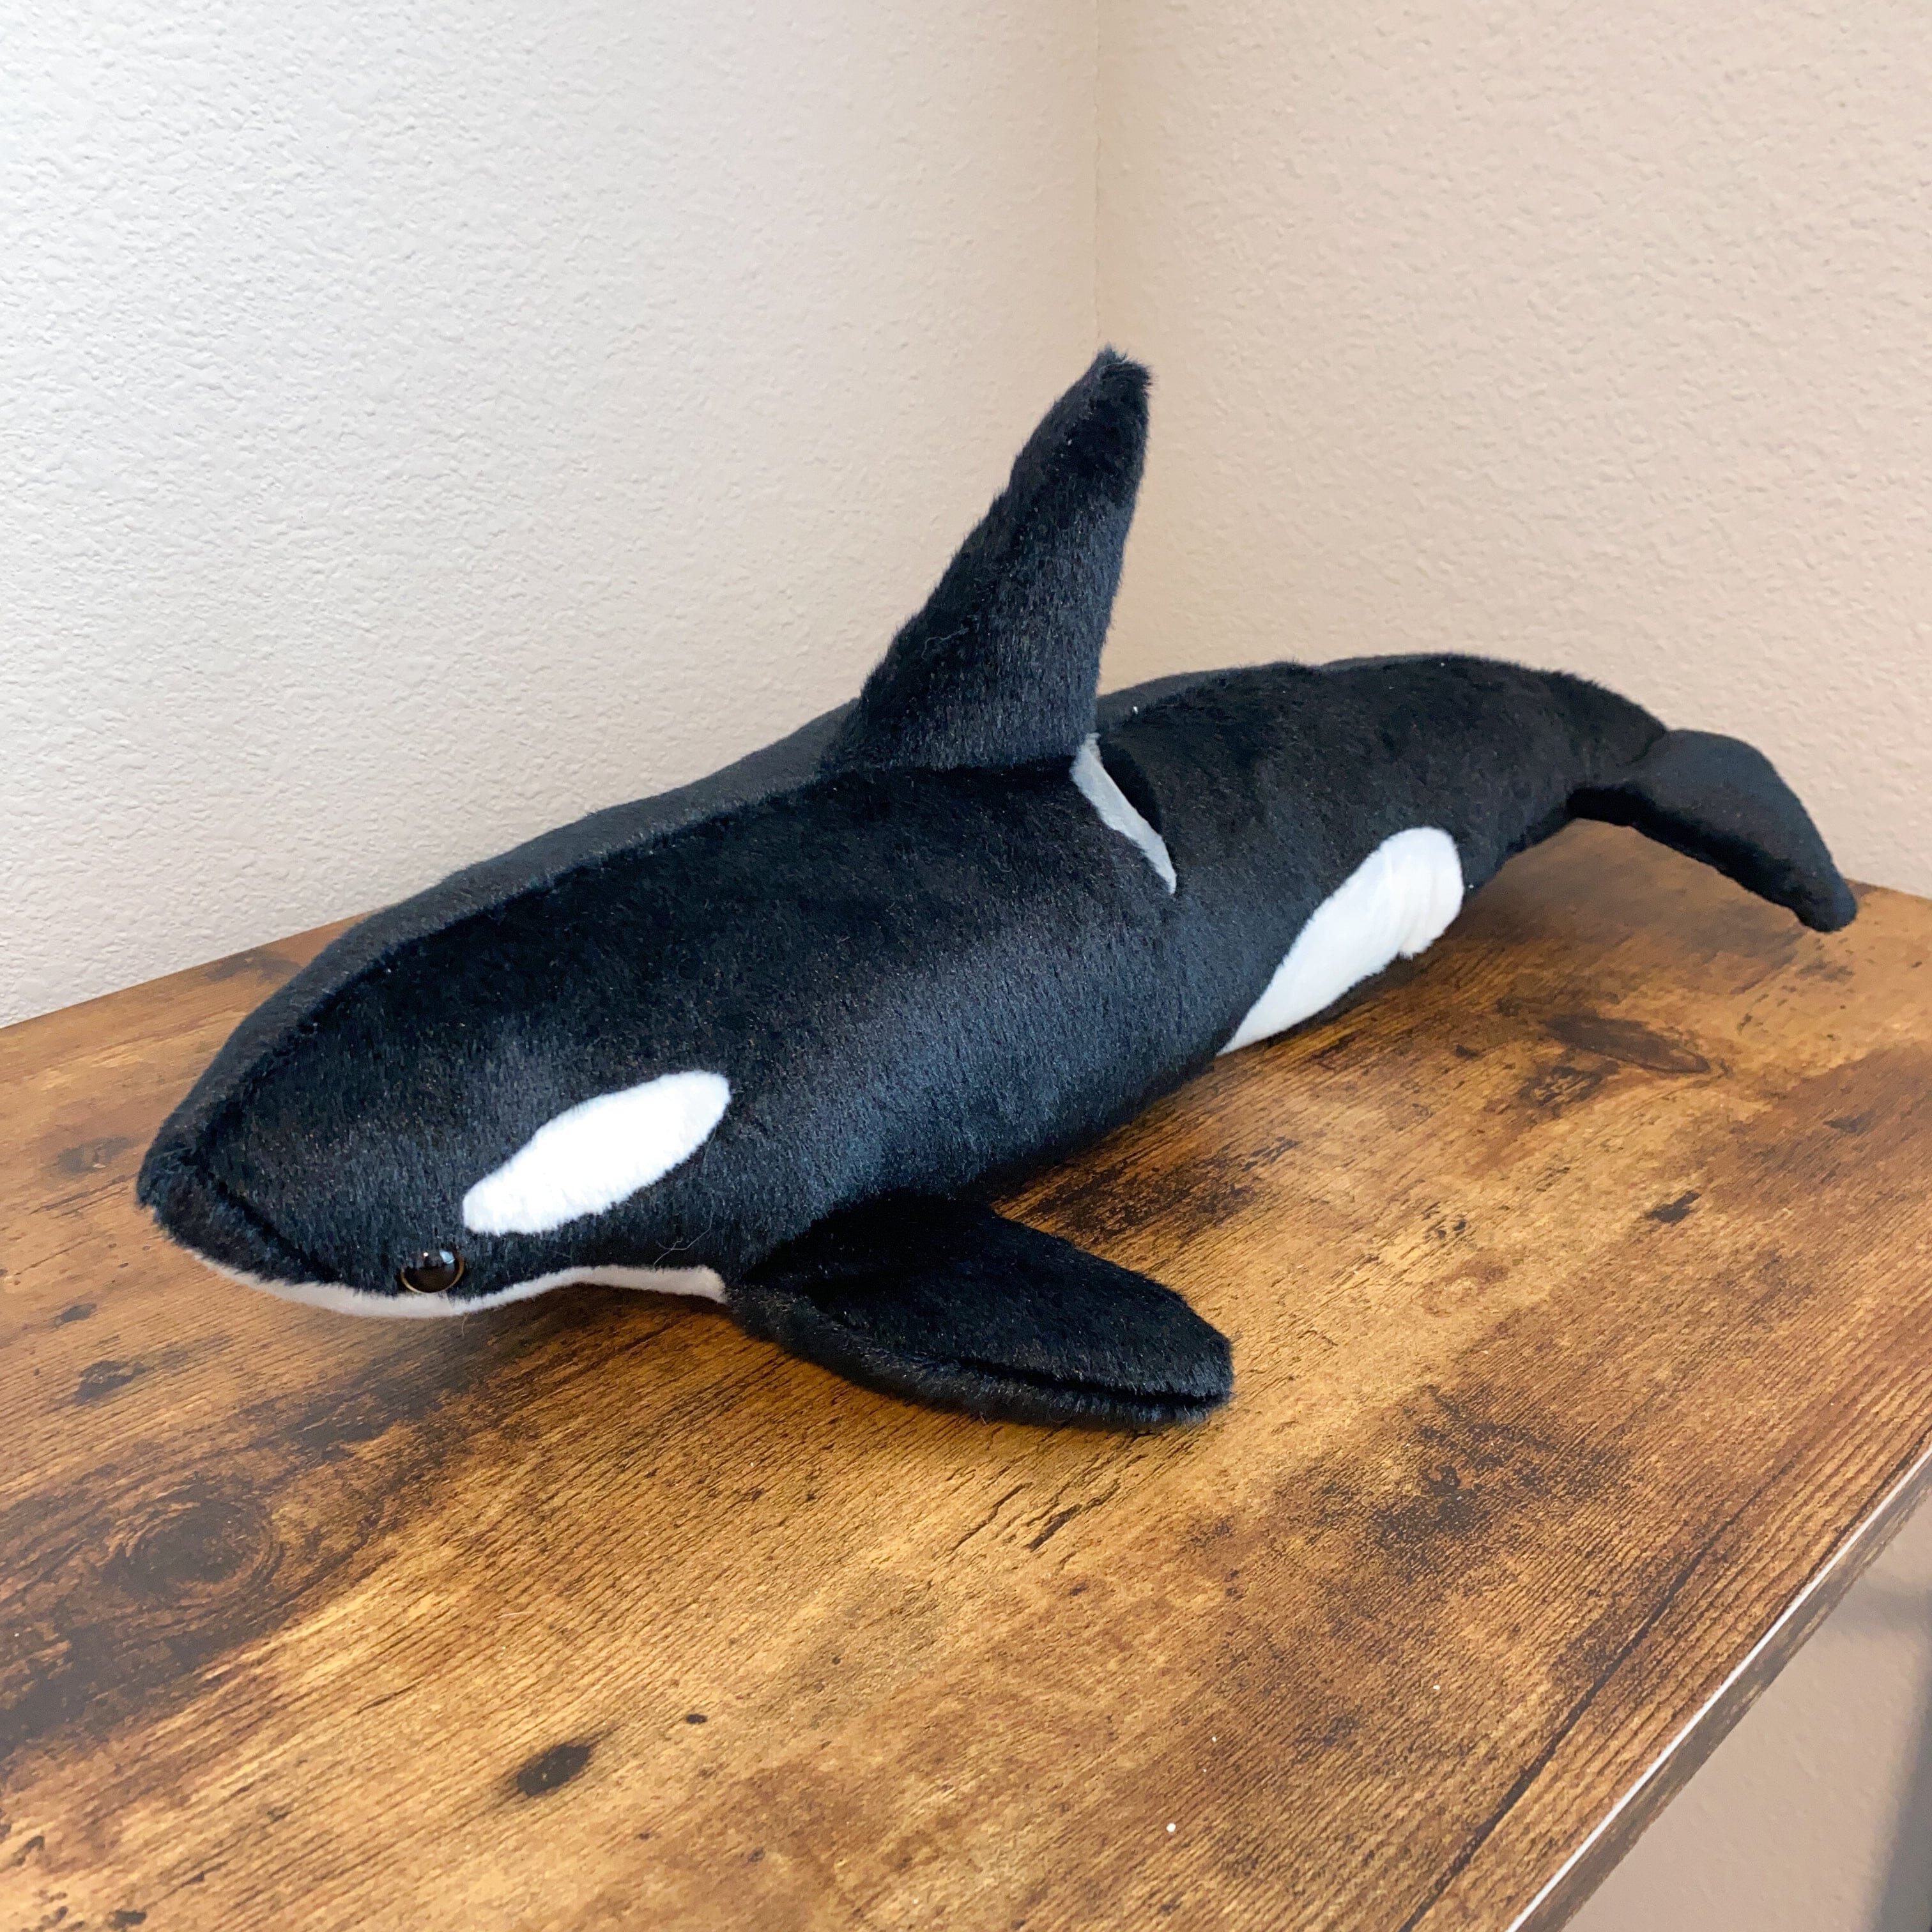 Orca Whale Plush – The Autistic Innovator